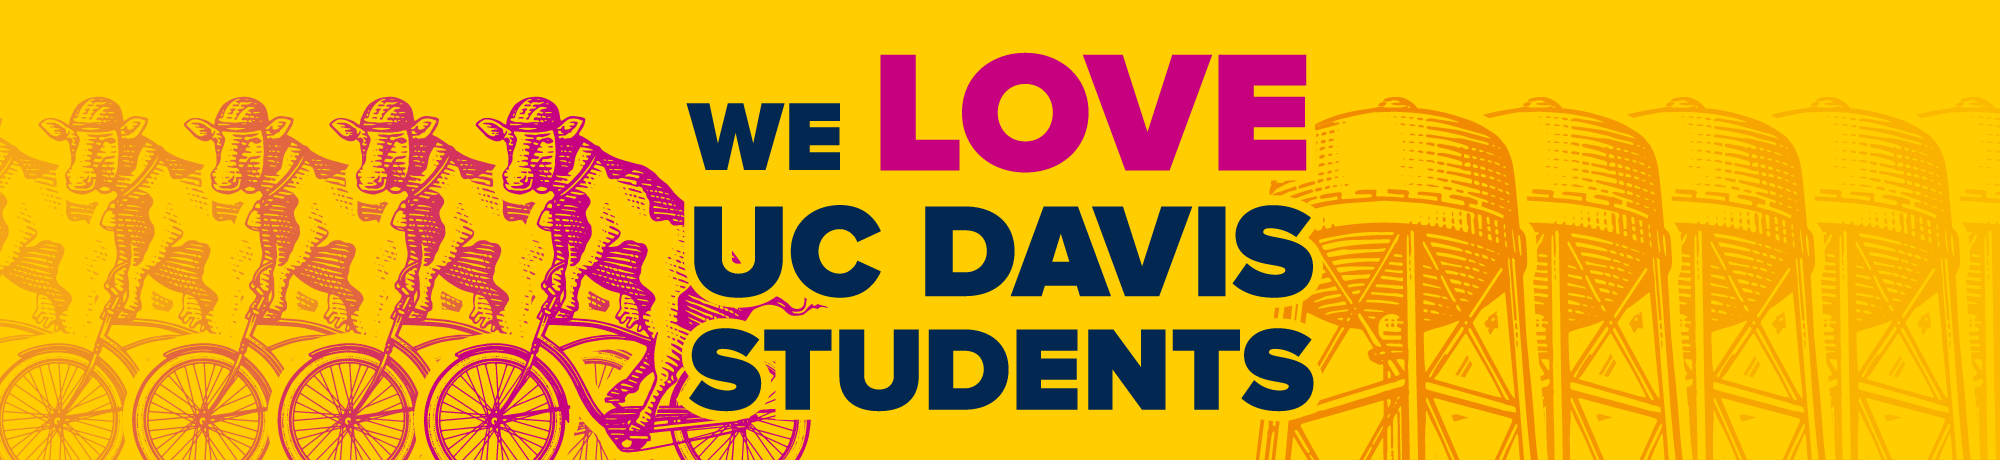 We Love UC Davis Students